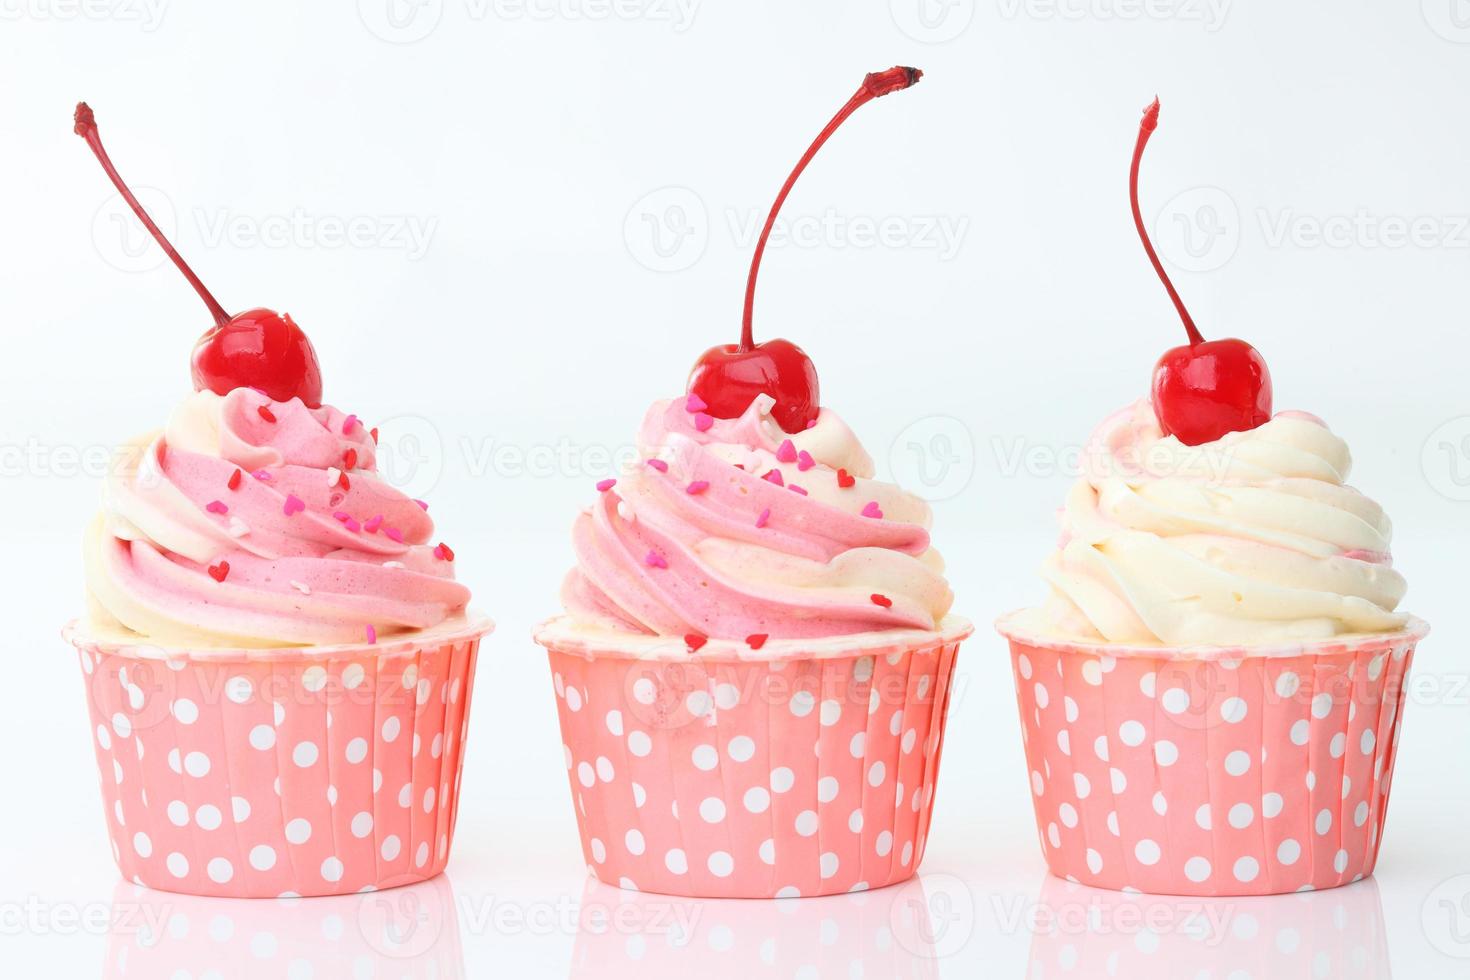 cupcake met slagroom en kers op wit wordt geïsoleerd foto